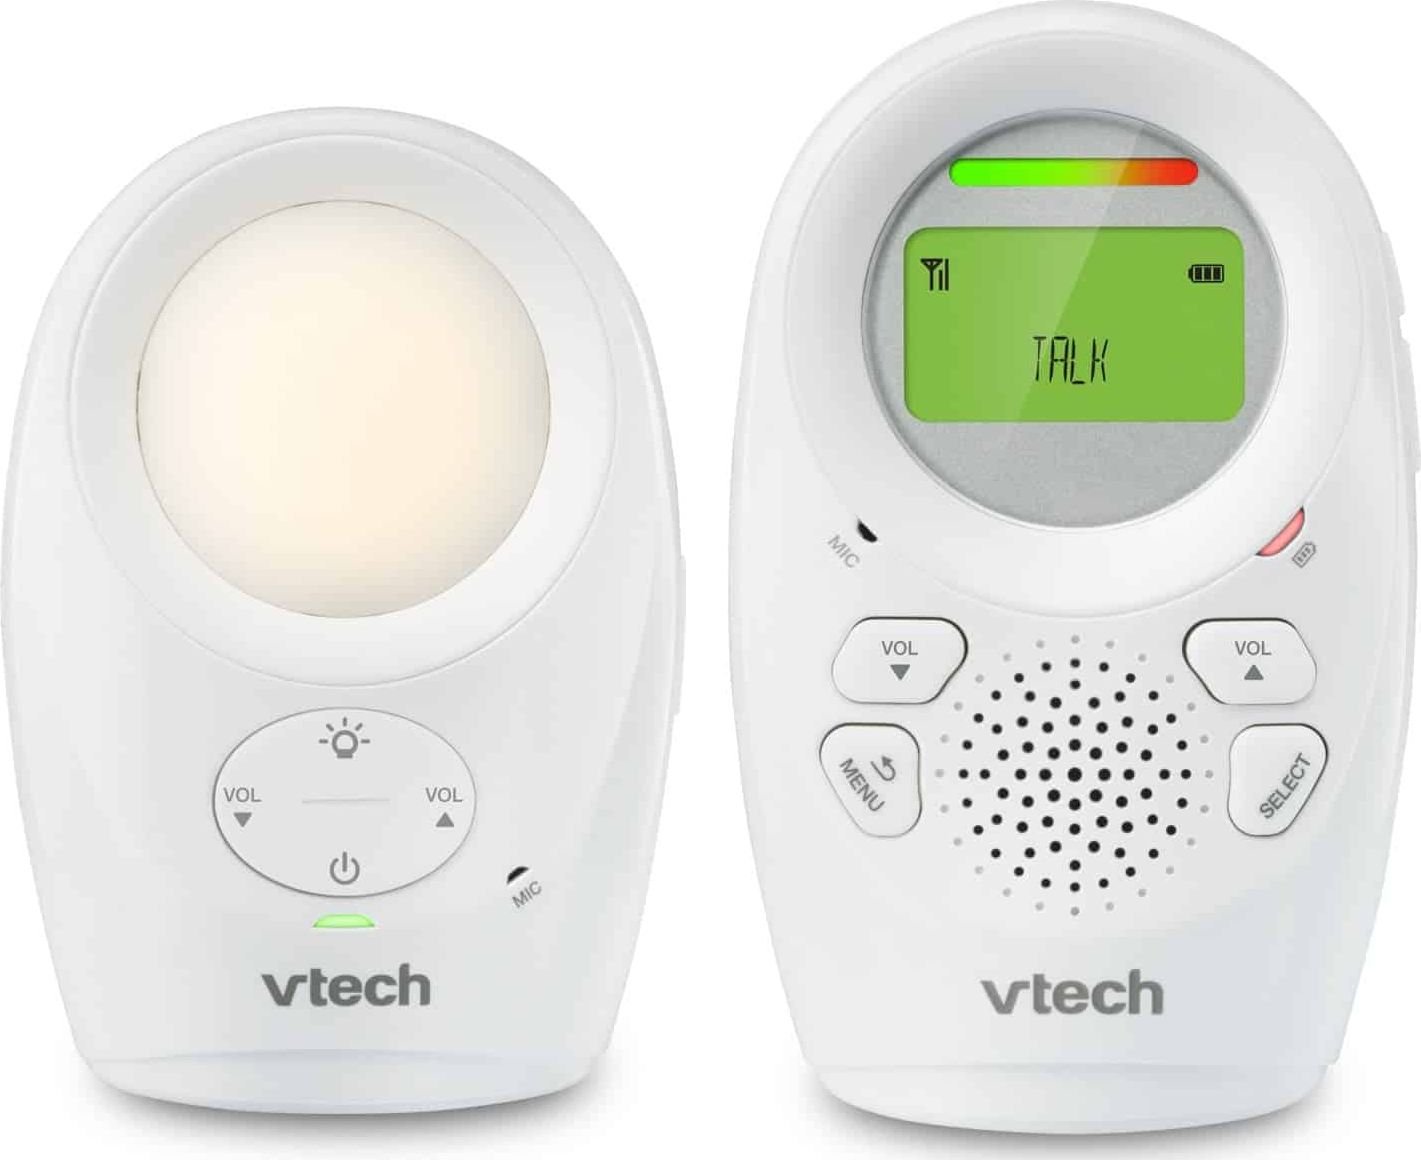 Monitoare video bebelusi - Monitor Audio pentru bebelusi cu ecran LCD Vtech,
În două sensuri,
Fără fir,
alb